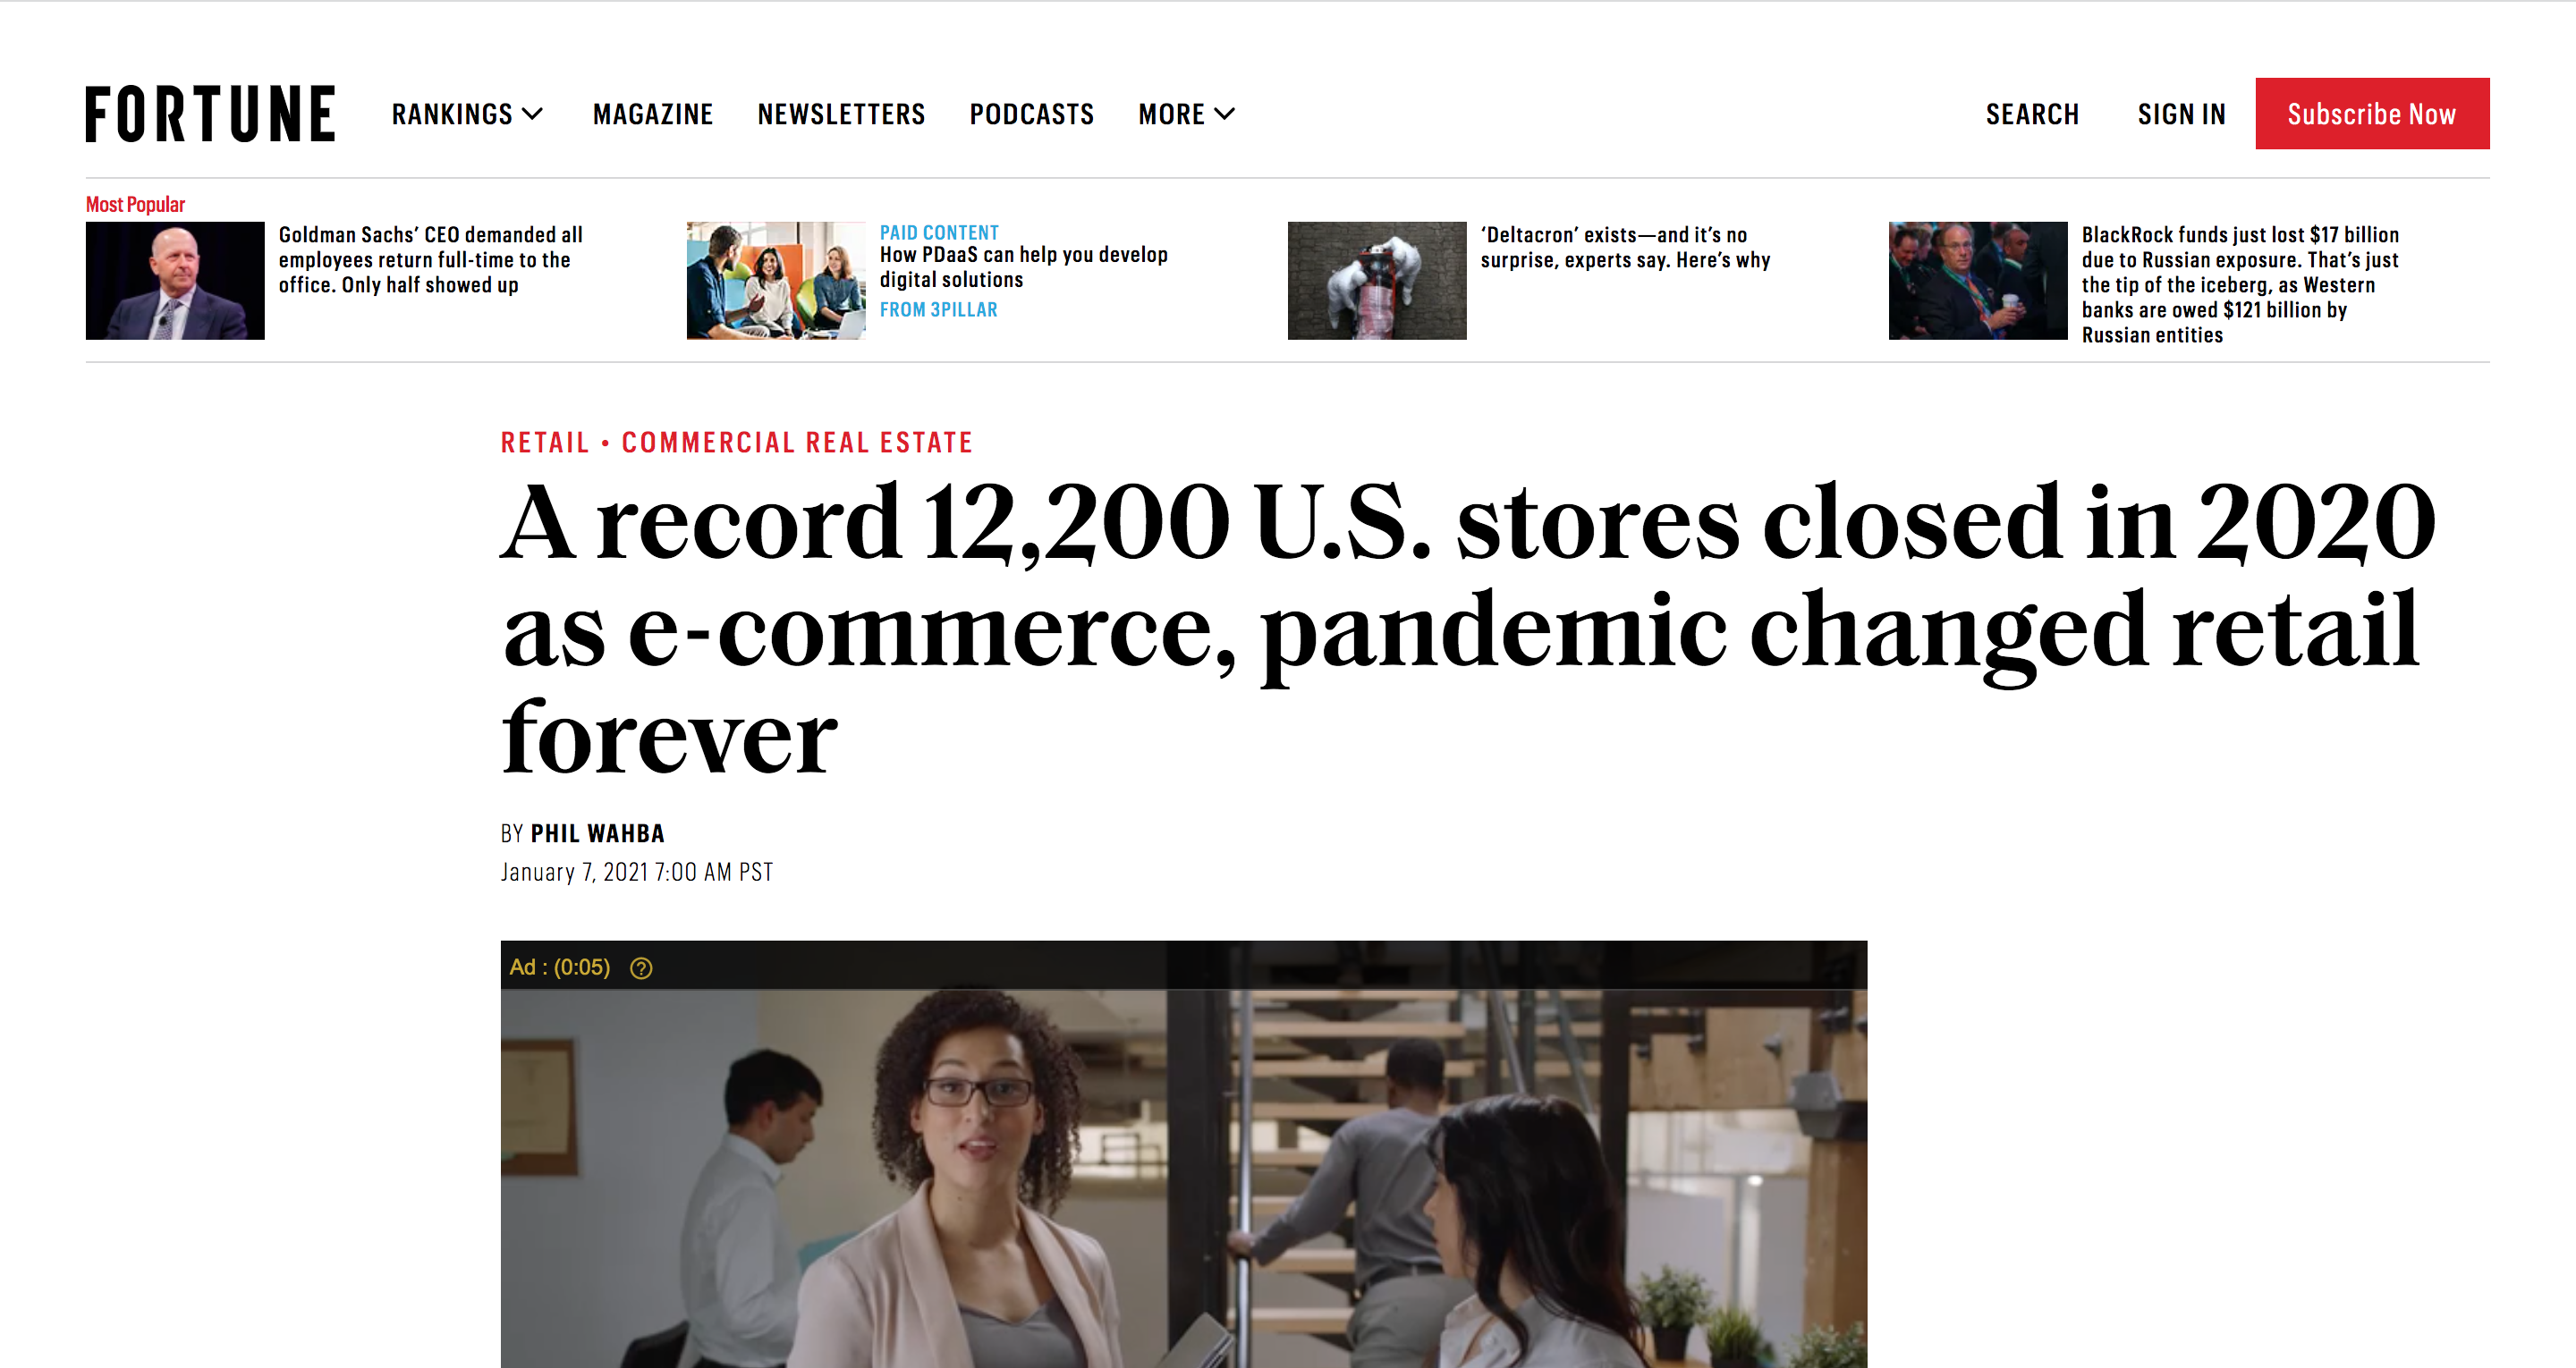 ”ECとパンデミックが小売業を一変させ、2020年には過去最高の12,200店舗が閉鎖された。”